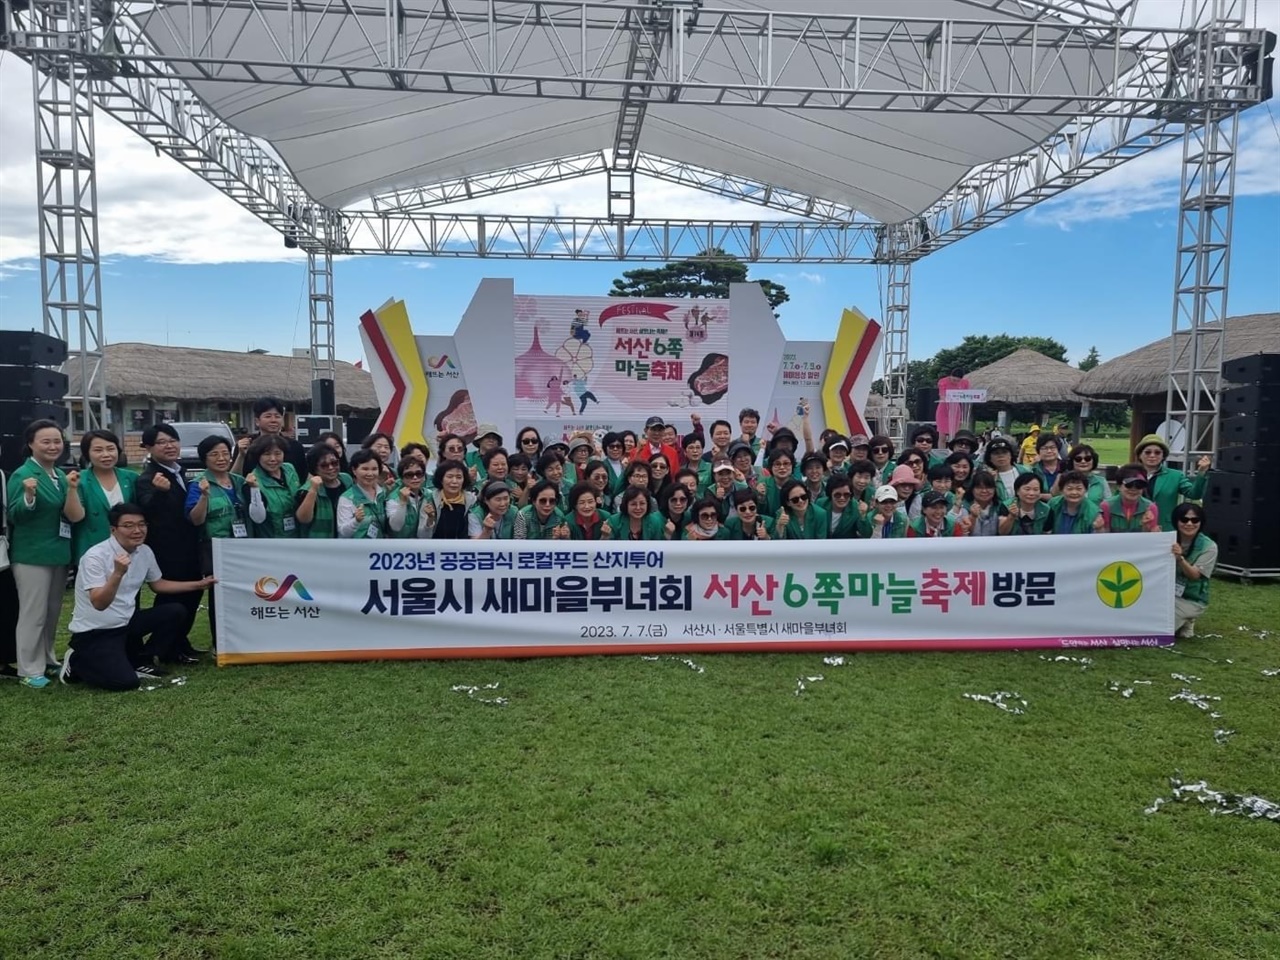 서산 6쪽 마늘 축제 개막 첫날인 7일, 서울시 새마을부녀회 회원 70여 명이 찾았다.